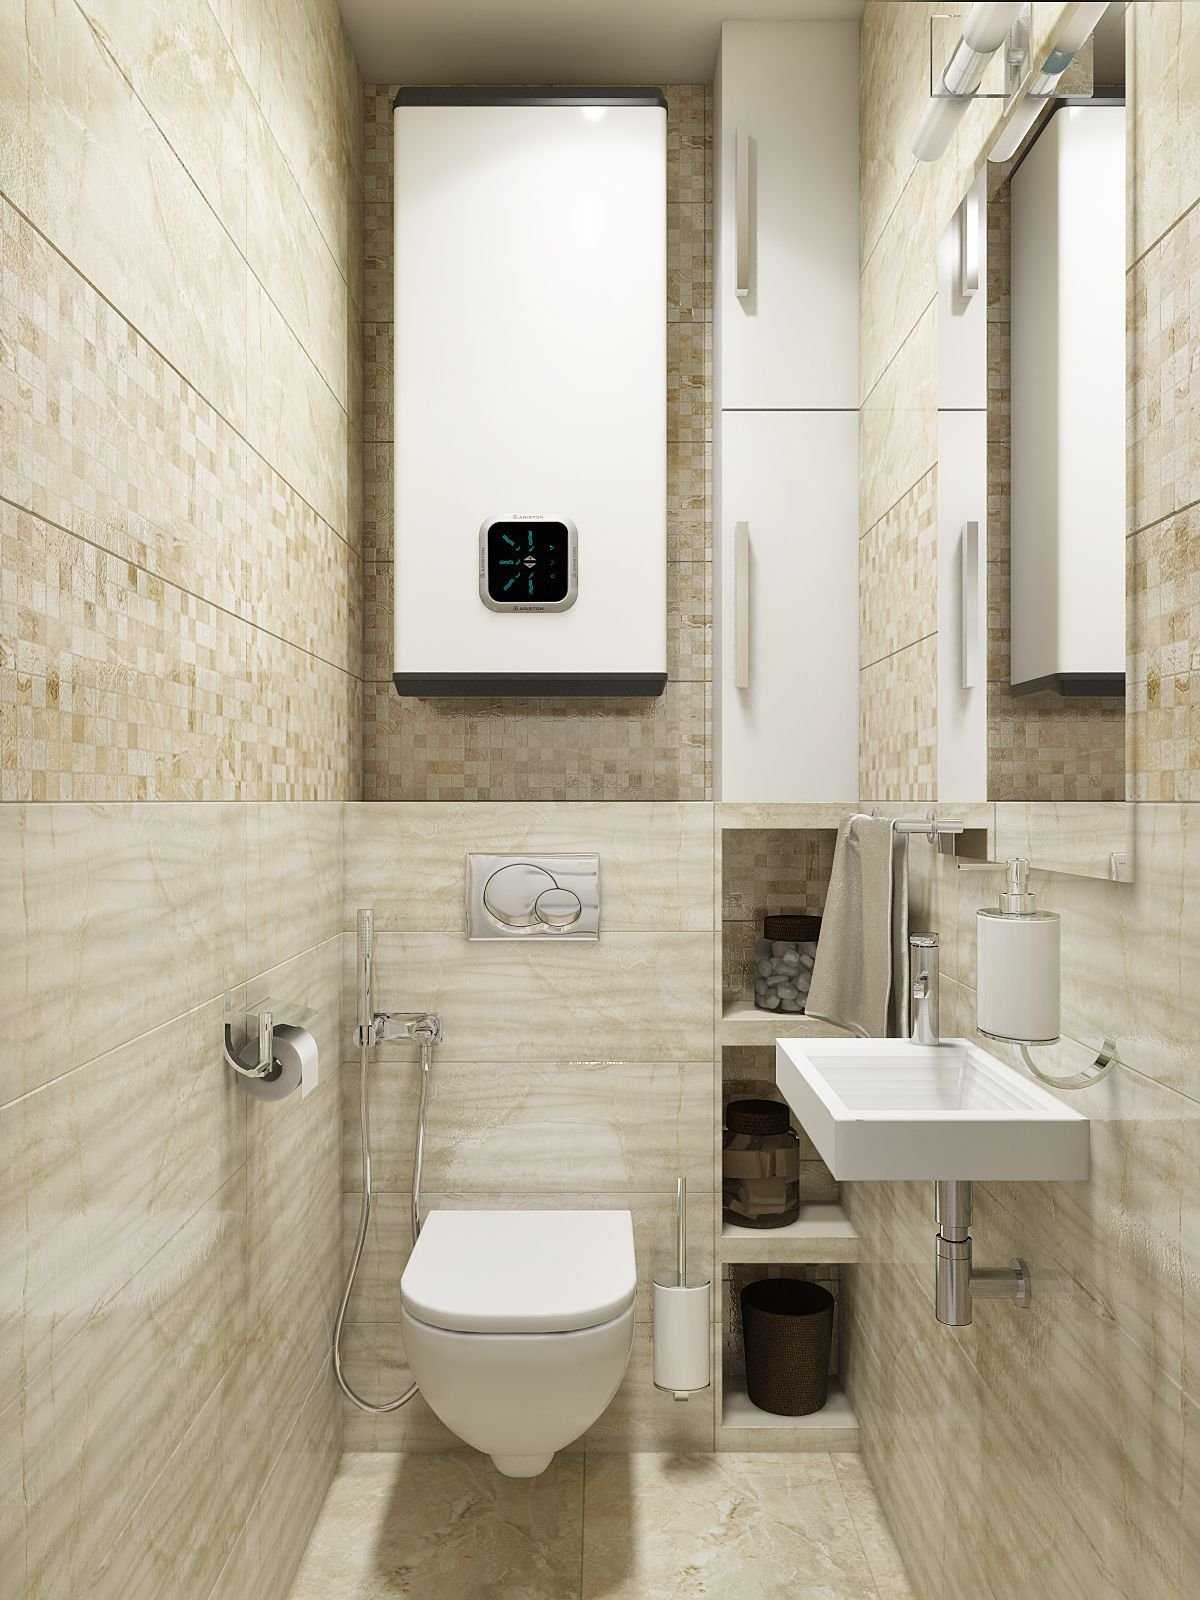 Плитка для туалета маленькой площади фото дизайн в светлых тонах